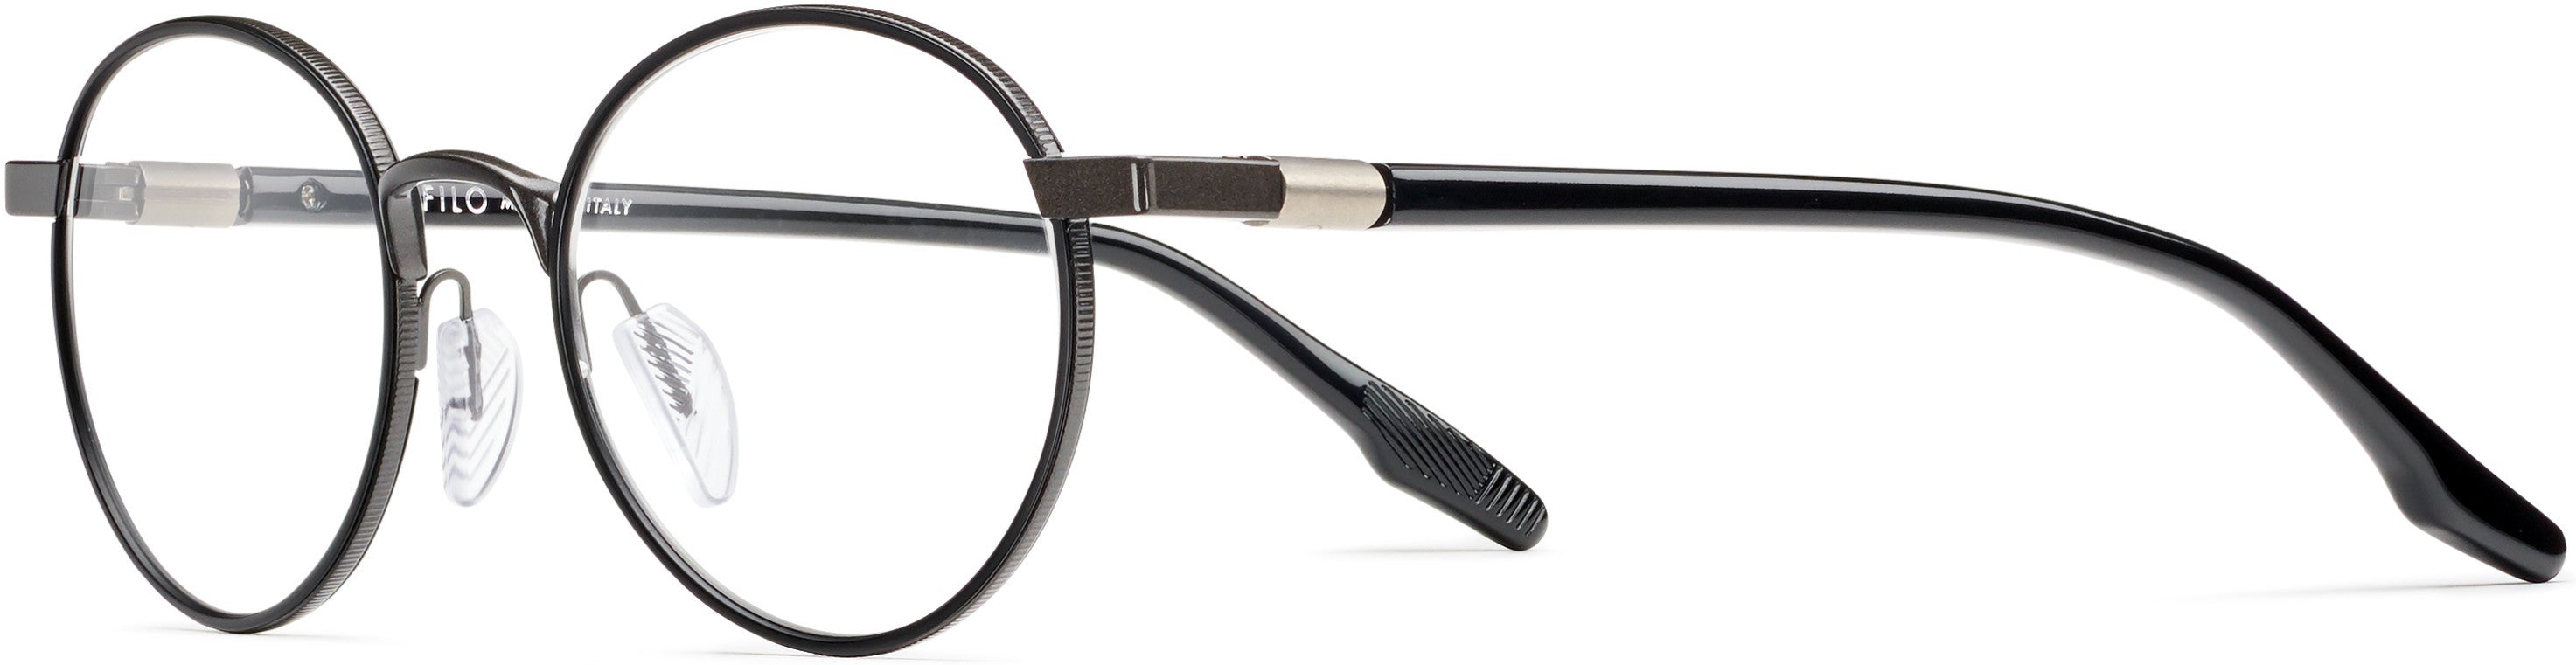 Safilo 2.0 Sagoma 02 Oval Modified Eyeglasses 0V81-0V81  Dark Ruthenium Black (00 Demo Lens)